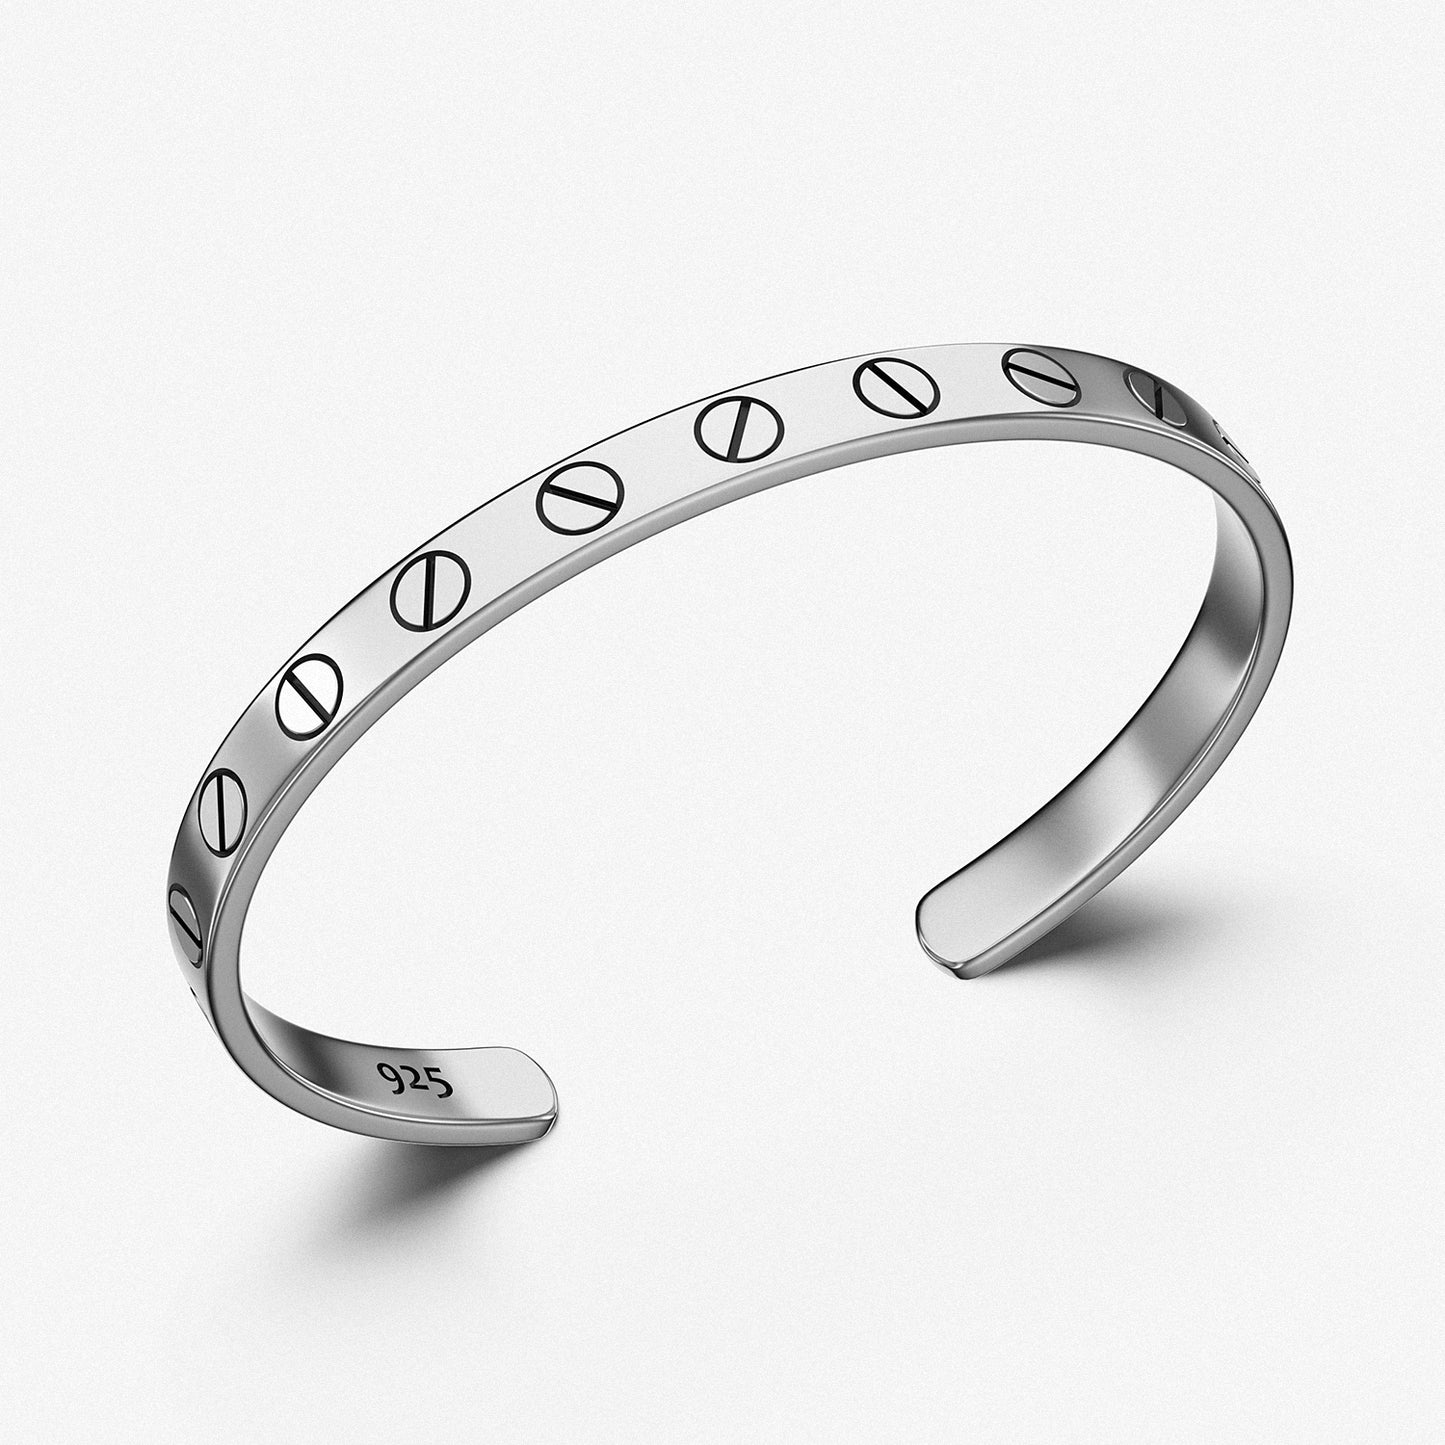 Cuff Bracelet "Locked" / 925 Sterling Silver